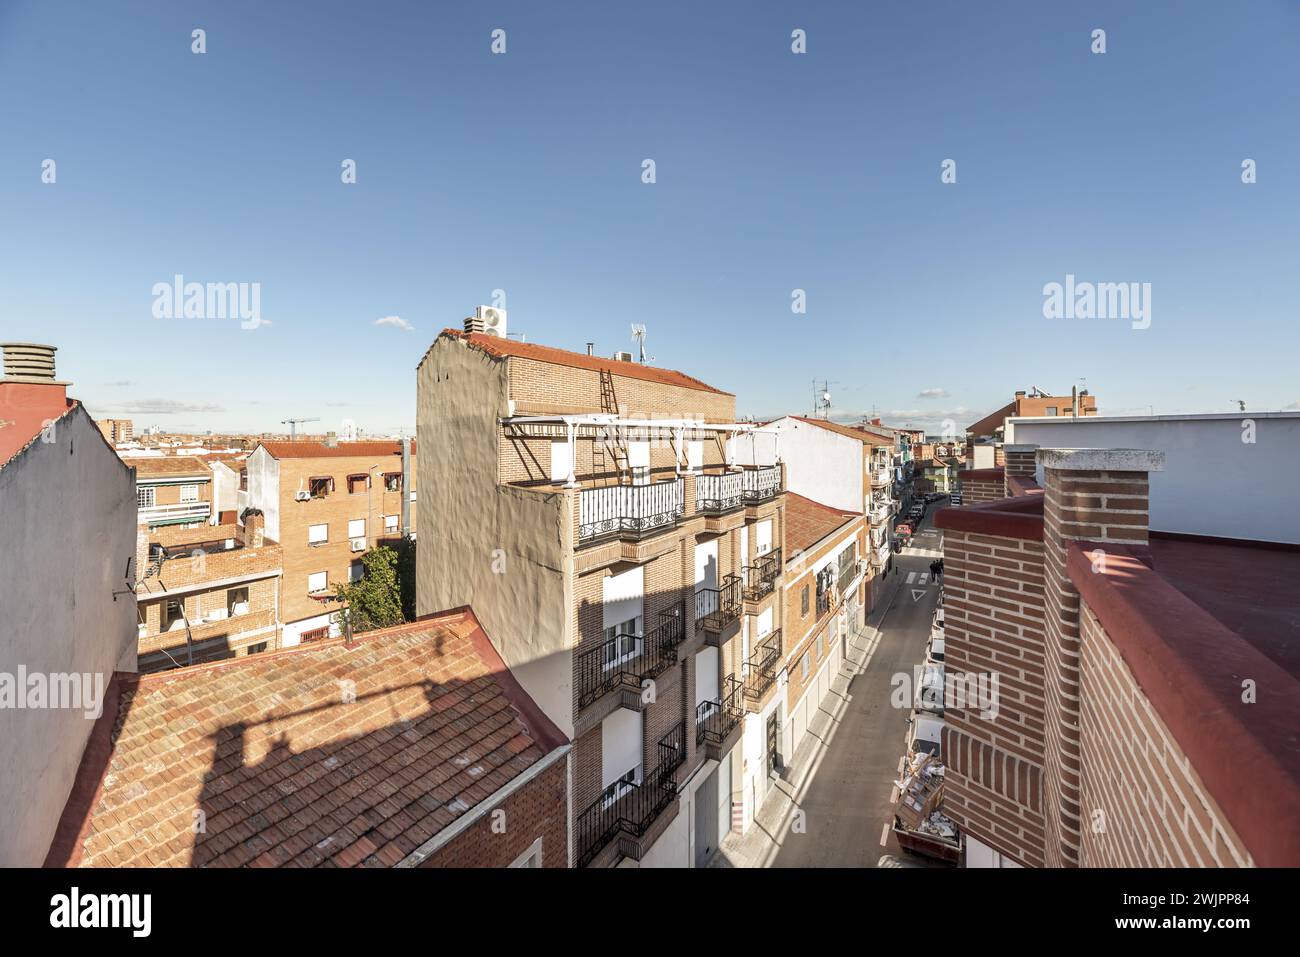 Blick auf Gebäude in einer städtischen Straße in einem Wohnviertel Stockfoto